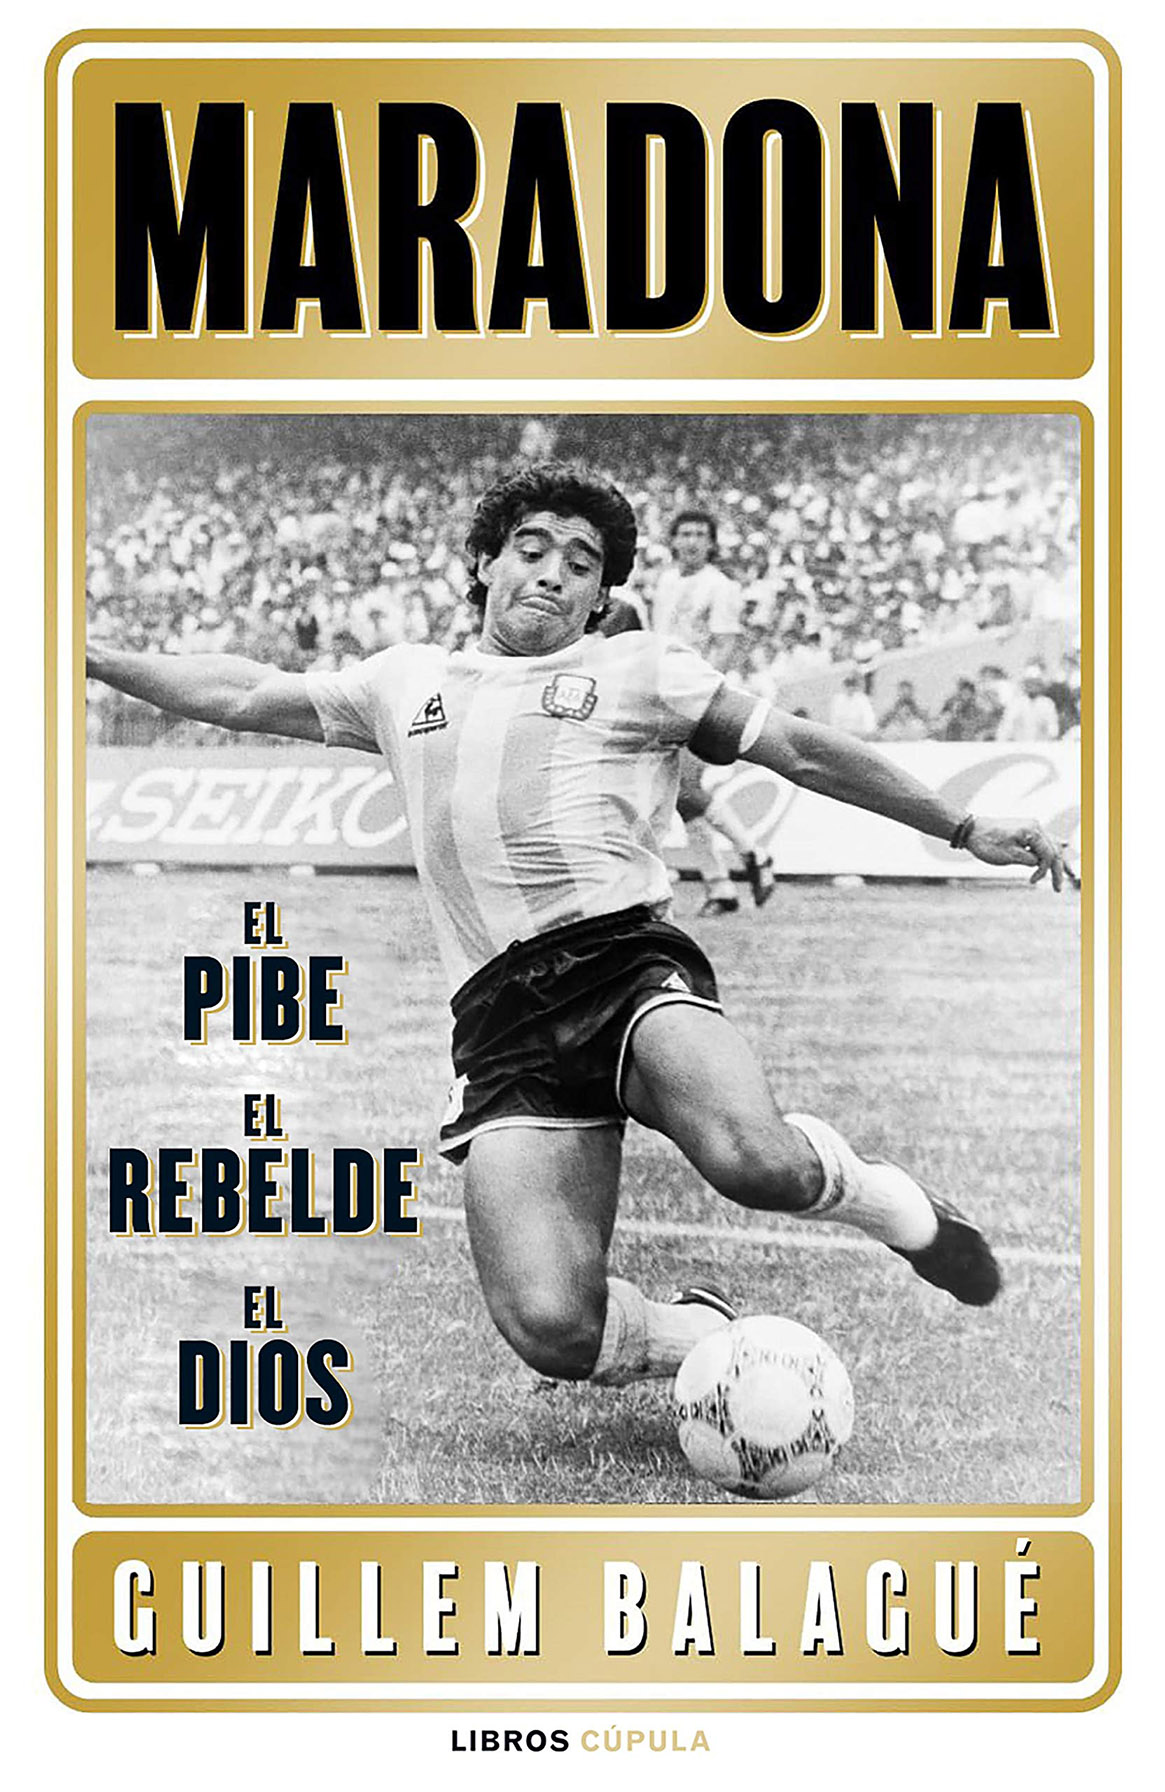 Maradona. El pibe, el rebelde, el dios (Guillem Balagué, 2021)